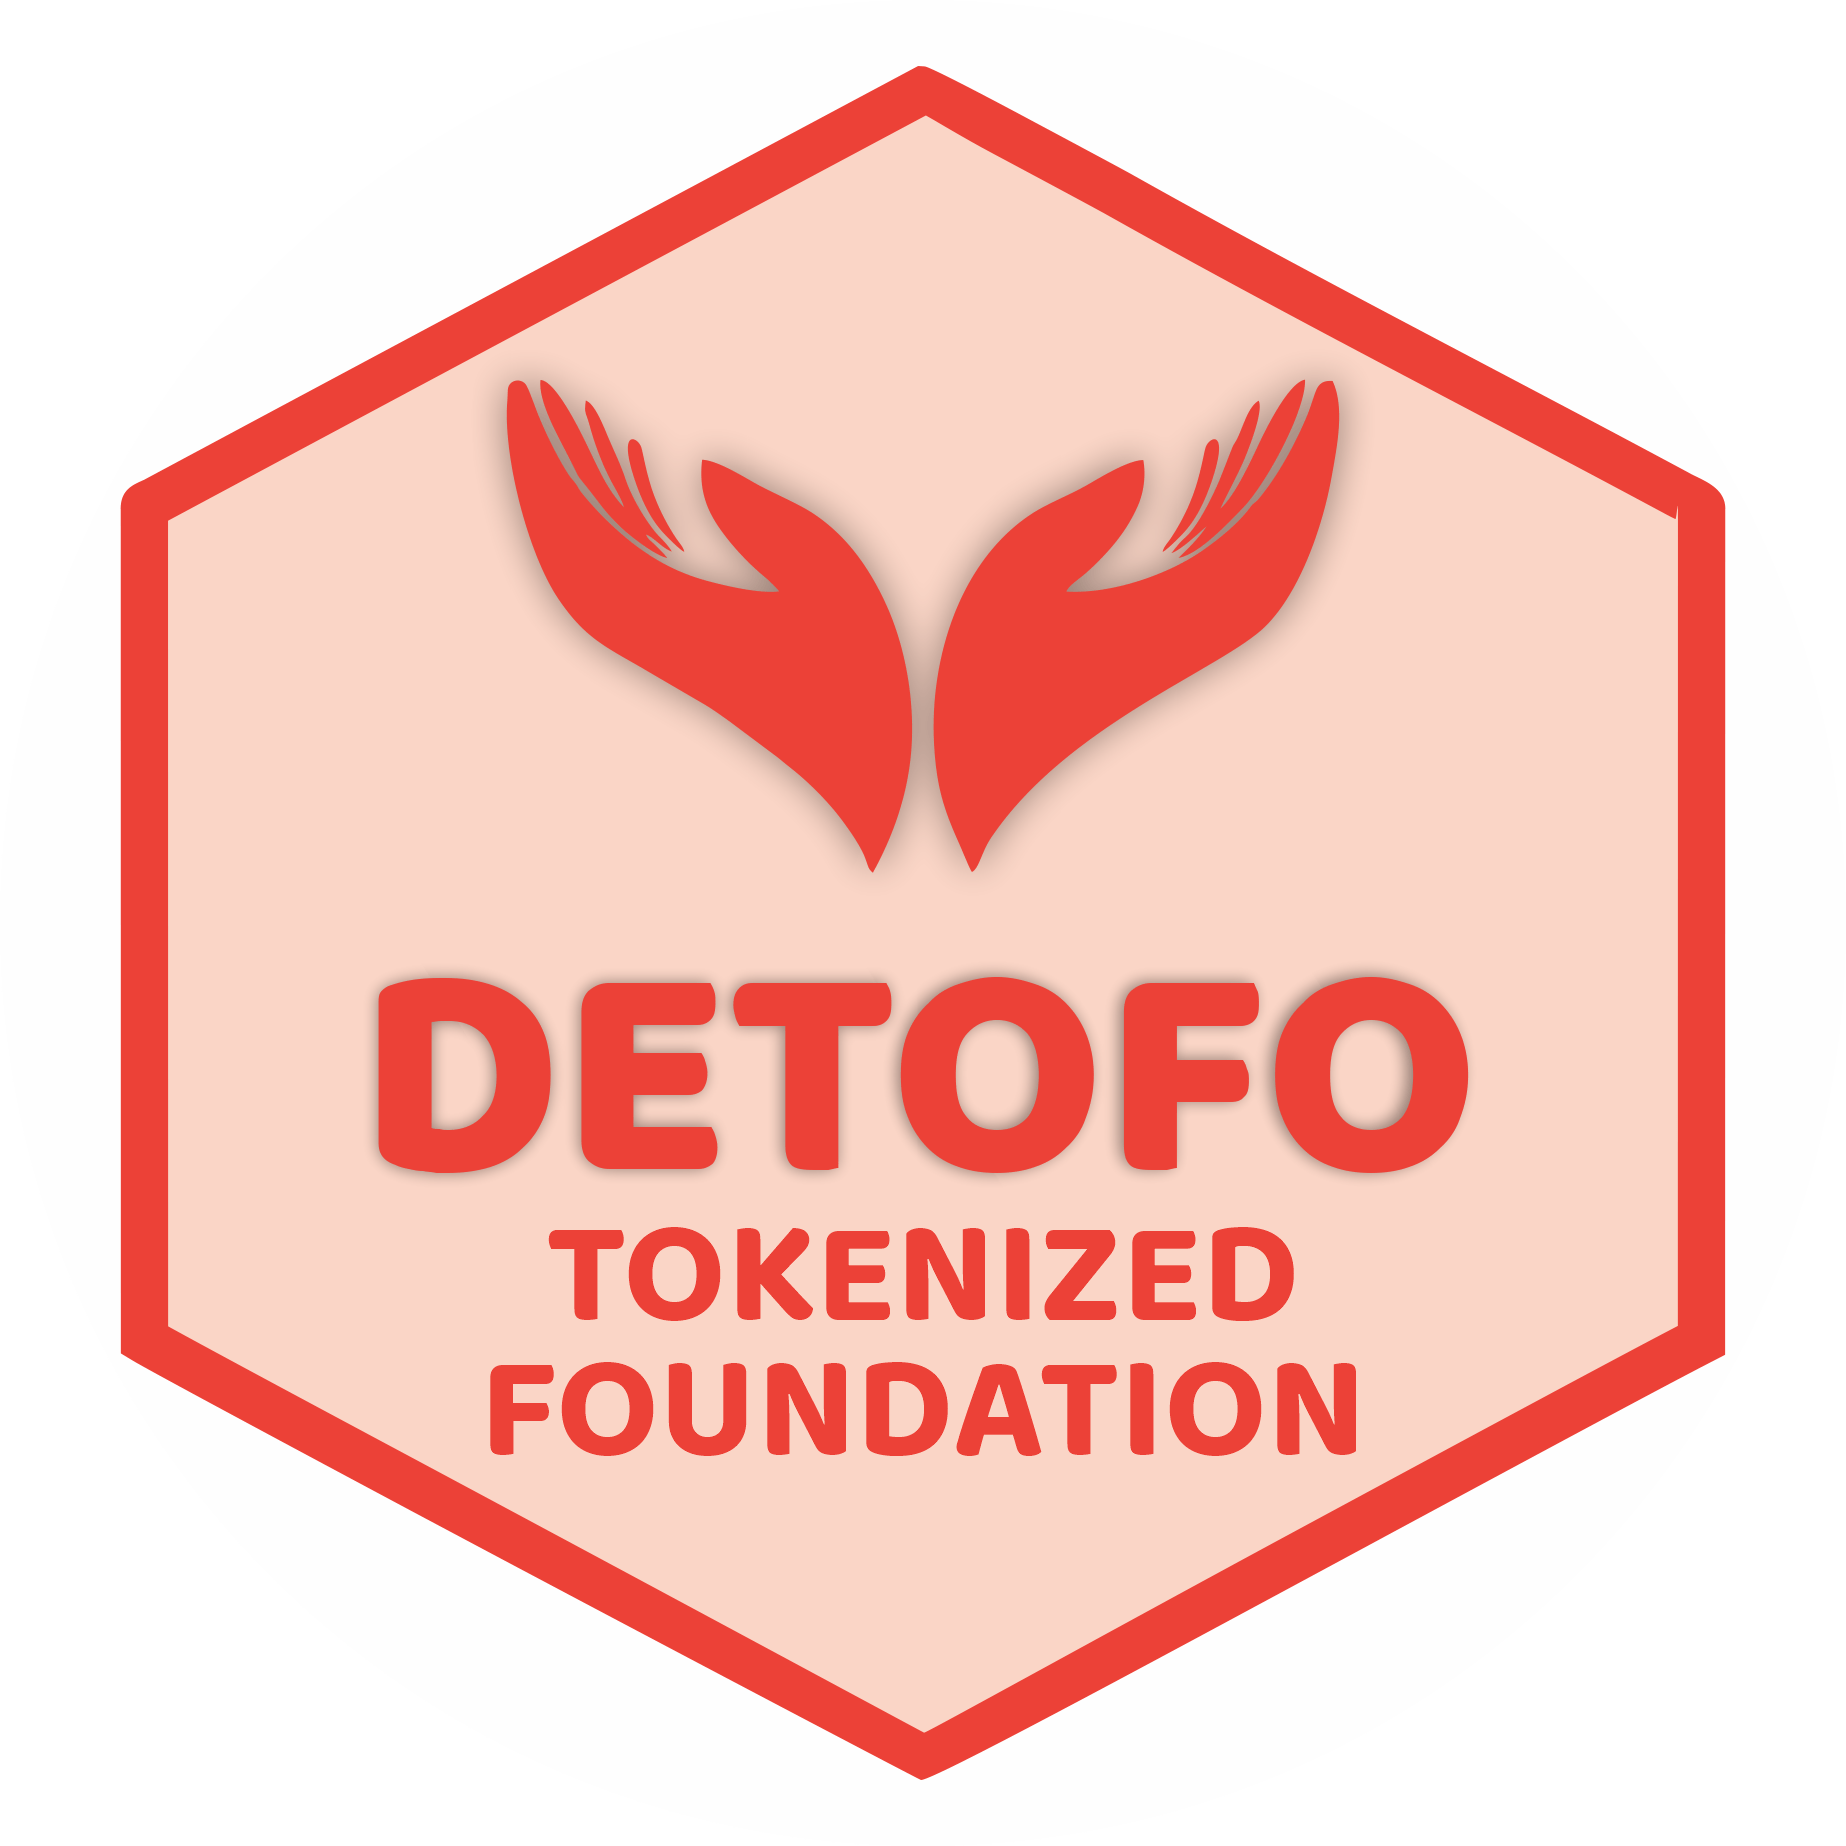 DETOFO 🌸 TOKENIZED FOUNDATION